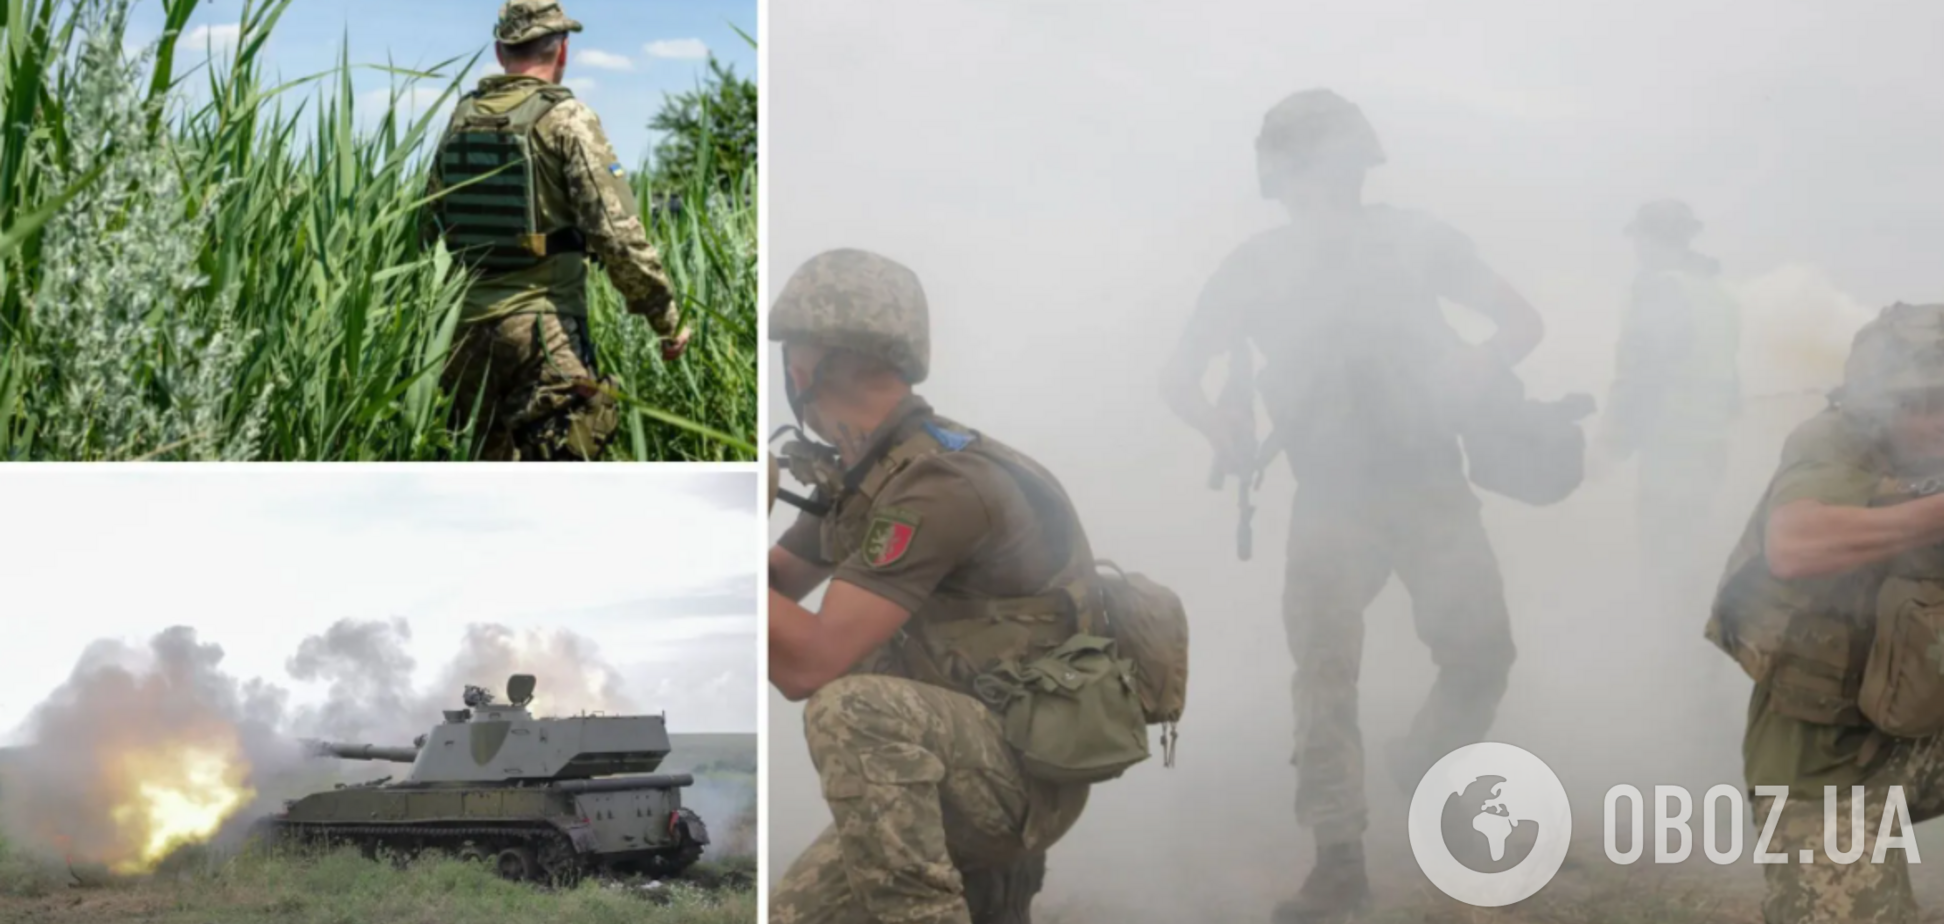 Оккупанты обстреляли позиции ВСУ на Донбассе из миноментов и гранатометов, – штаб ООС